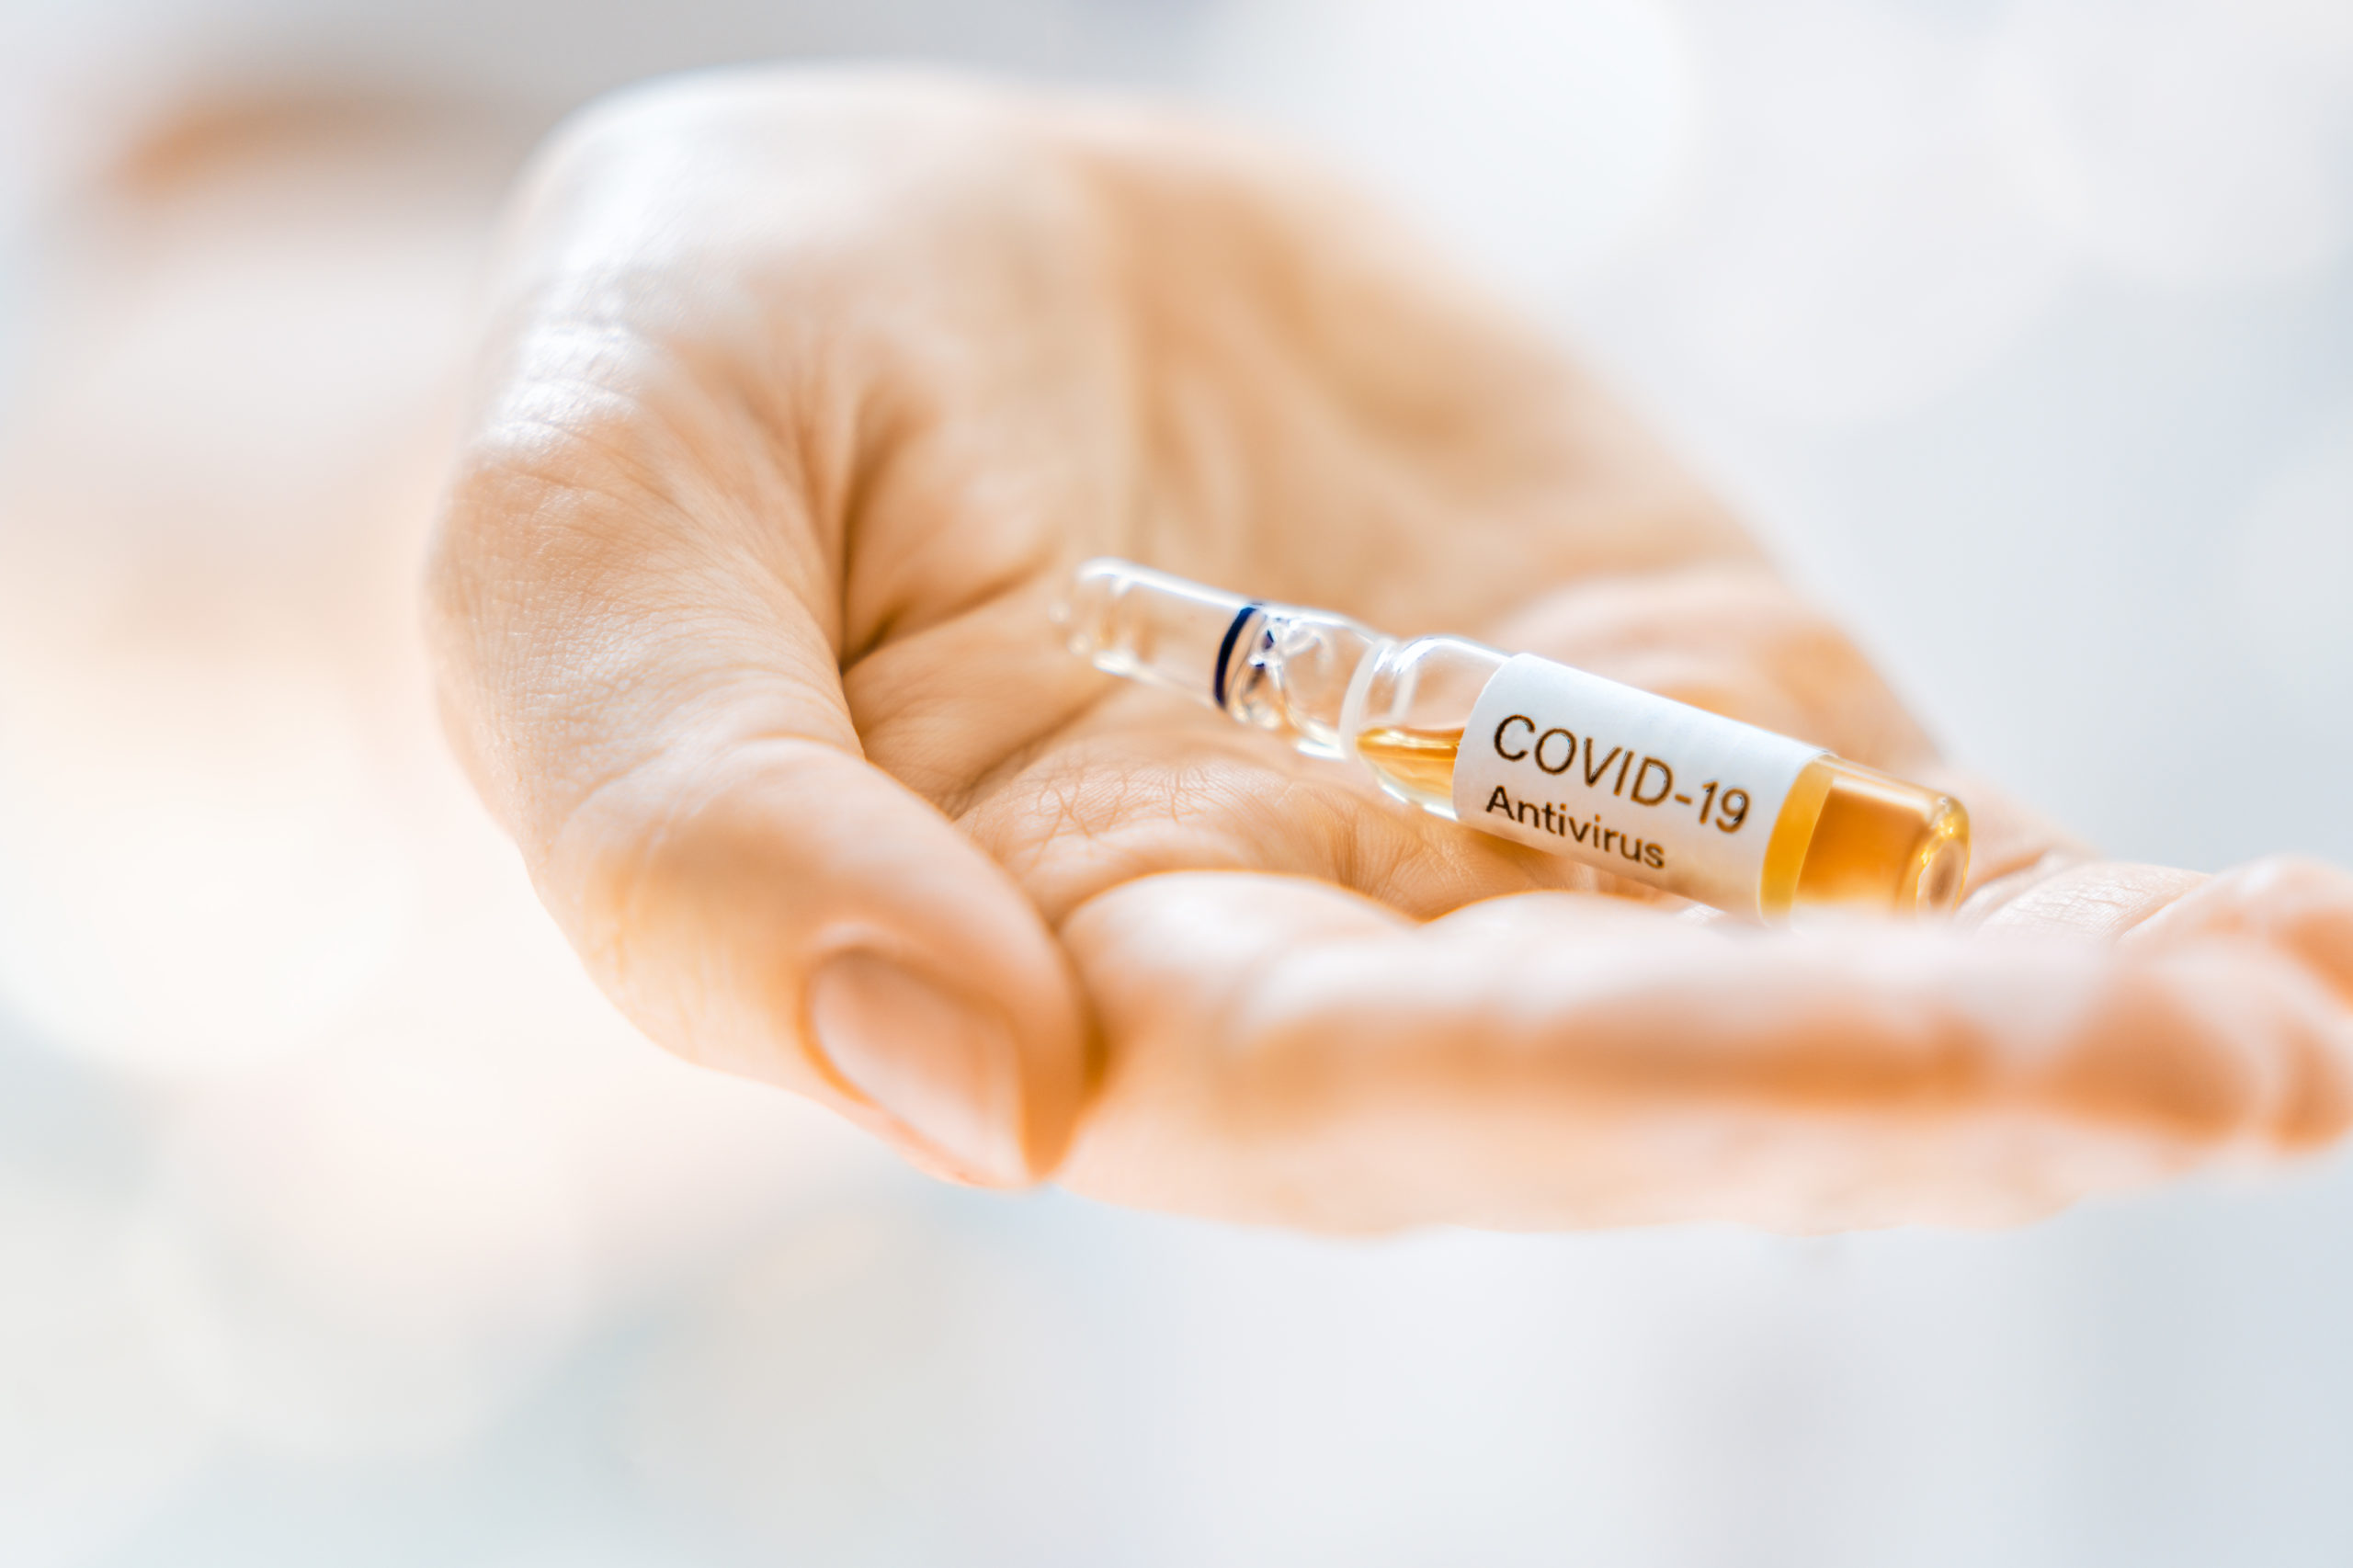 Biden Administration Loses 20 million COVID-19 Vaccines